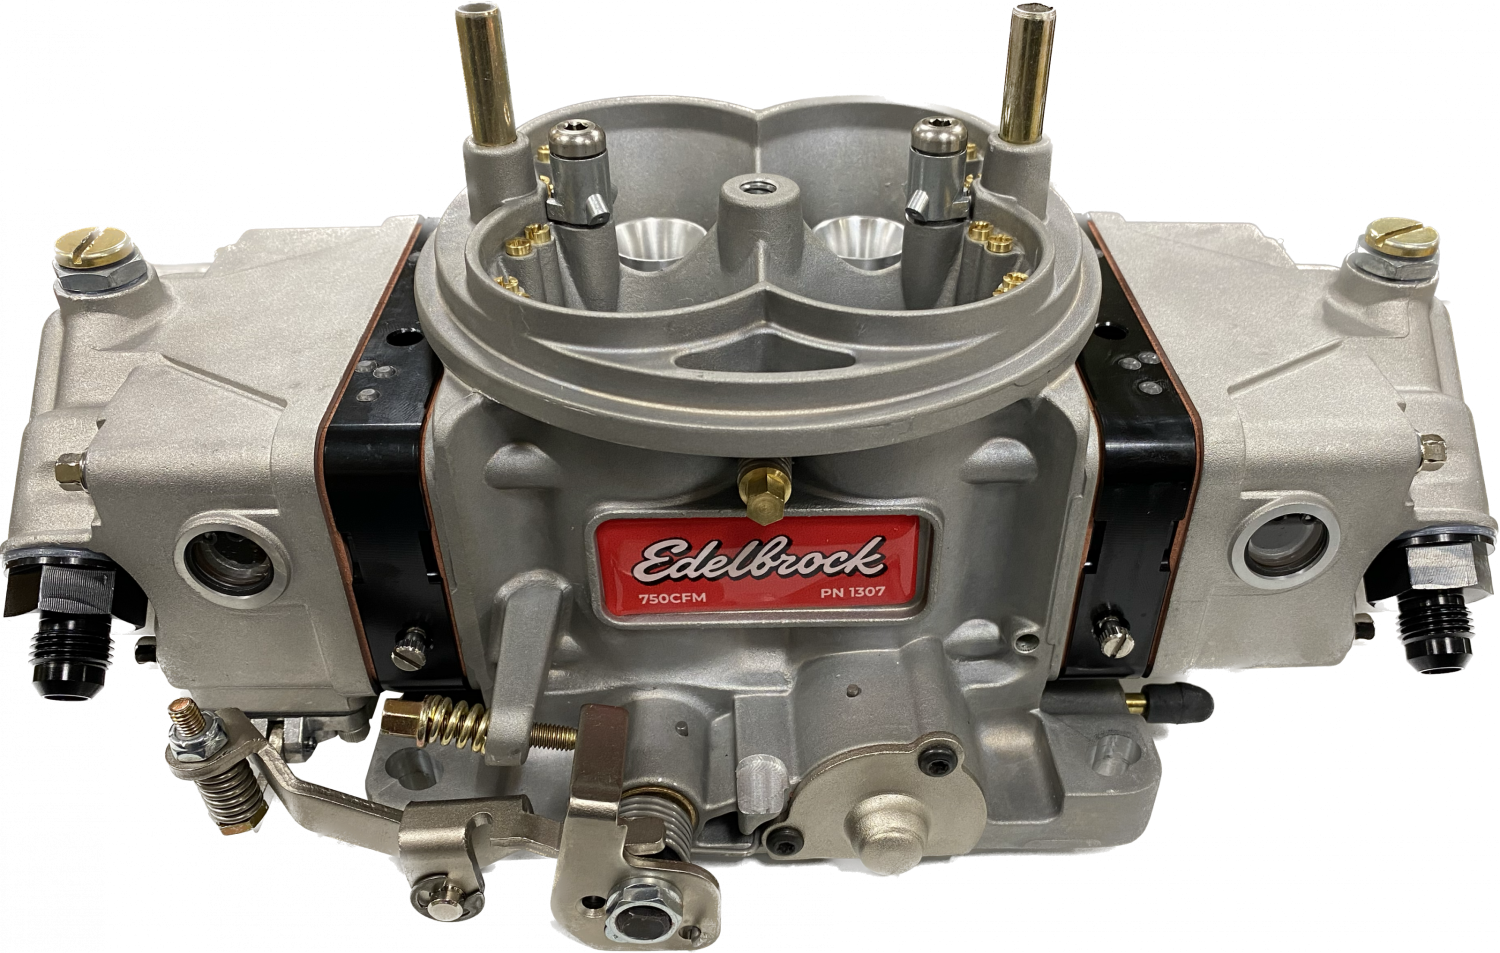 Circle Track Racing Carburetor -Alcohol - 4150 Series - KB Carburetors